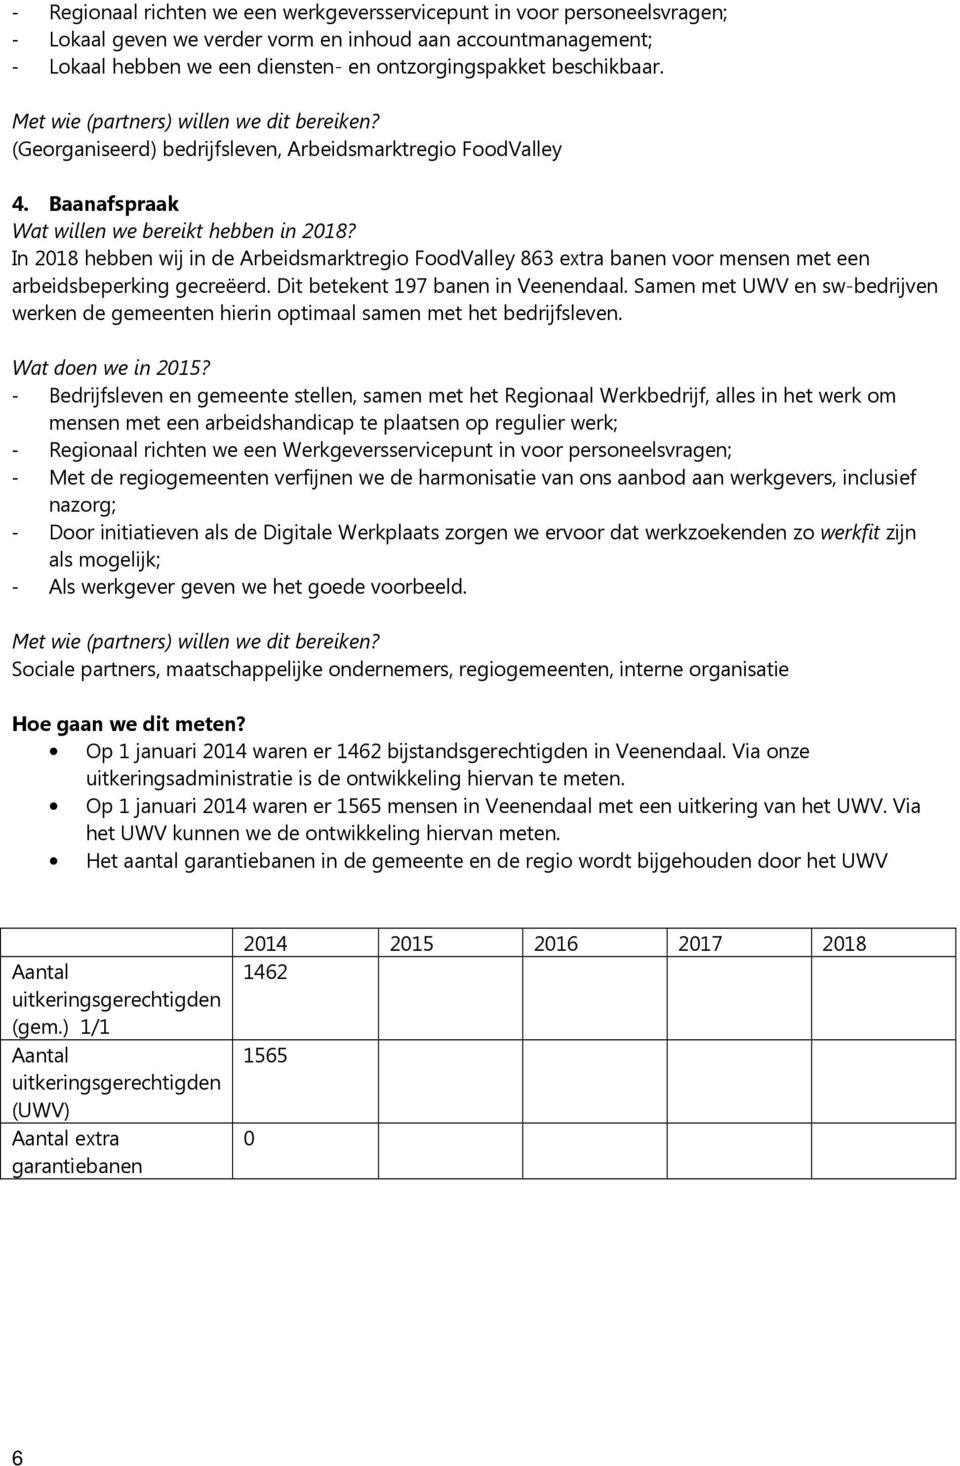 Baanafspraak In 2018 hebben wij in de Arbeidsmarktregio FoodValley 863 extra banen voor mensen met een arbeidsbeperking gecreëerd. Dit betekent 197 banen in Veenendaal.